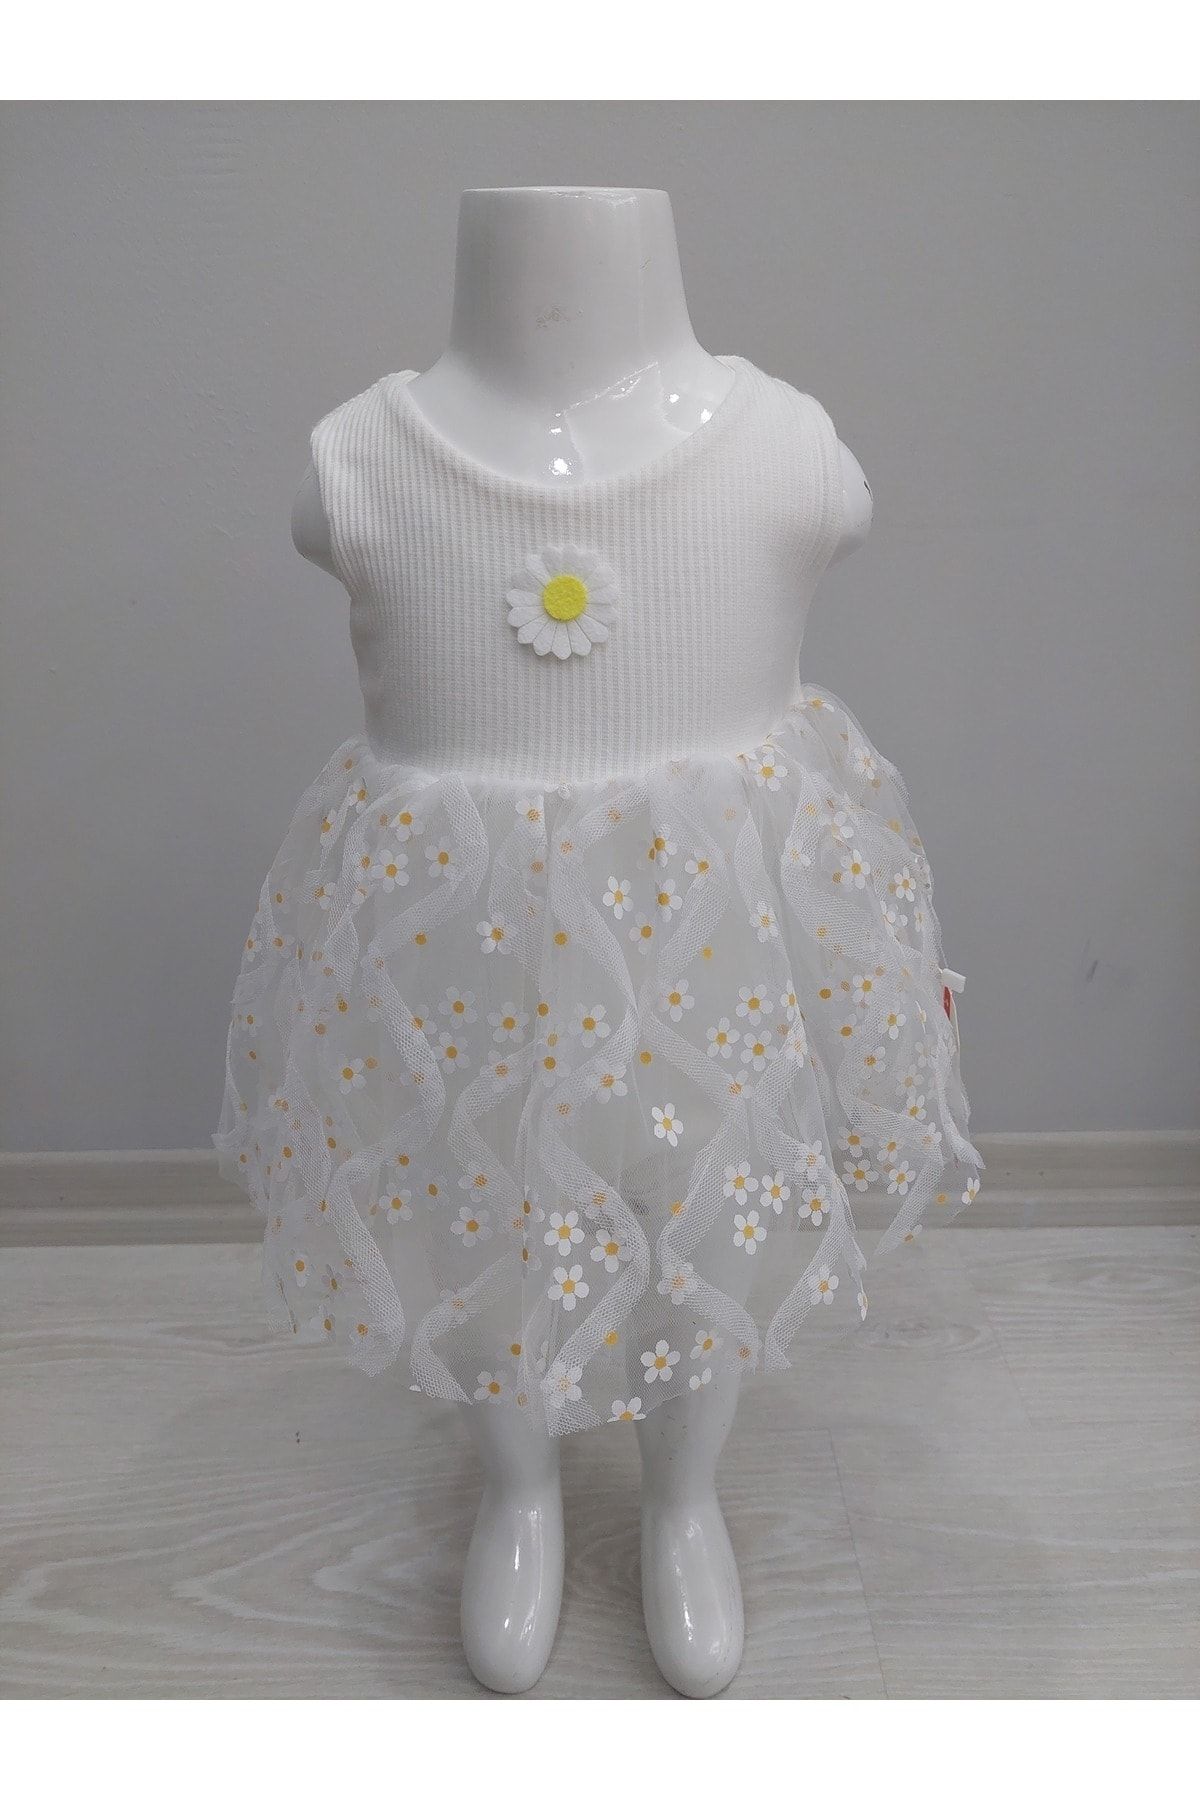 İSSE TEKSTİL Kız Bebek Papatya Desenli Elbise Tül Etekli ÇItçıtlı Badi 6 ay 12 ay 18 ay